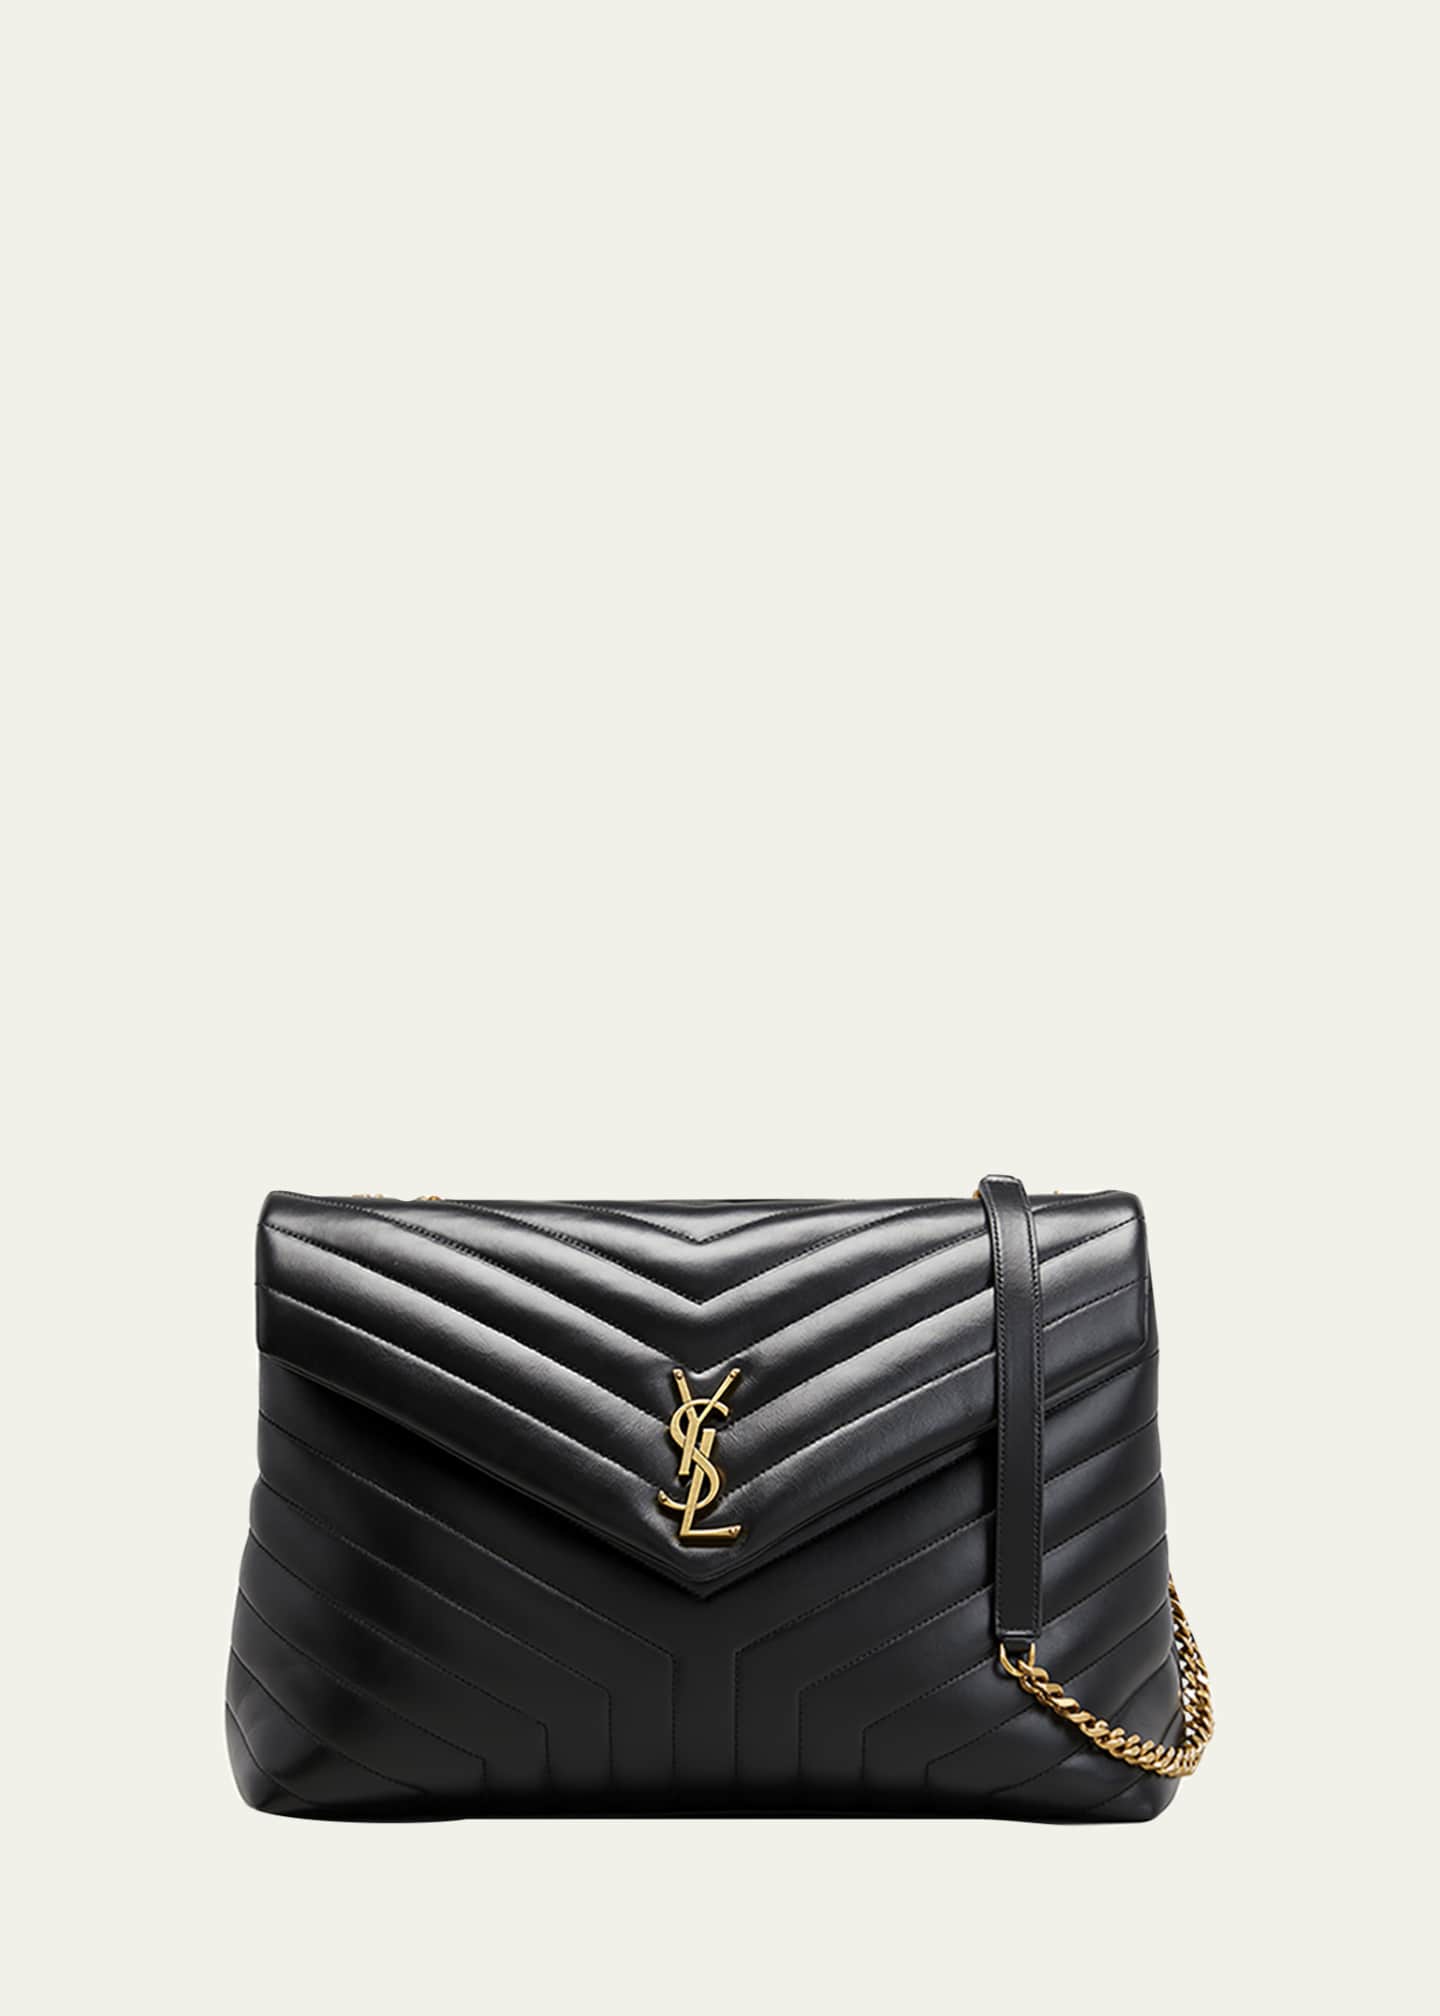 Loulou Medium Leather Shoulder Bag in Black - Saint Laurent